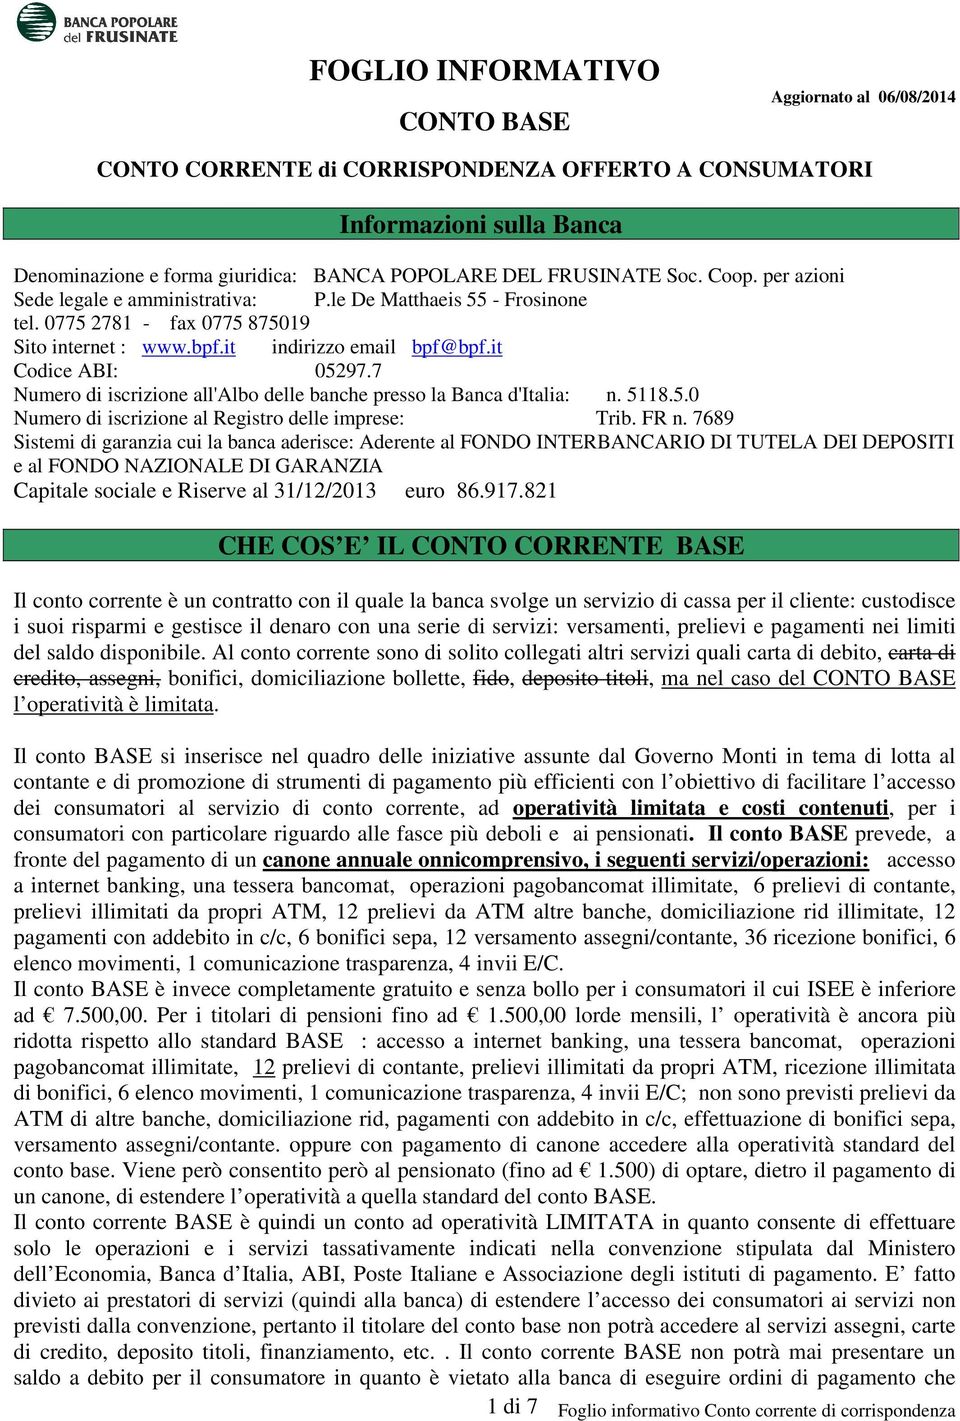 7 Numero di iscrizione all'albo delle banche presso la Banca d'italia: n. 5118.5.0 Numero di iscrizione al Registro delle imprese: Trib. FR n.